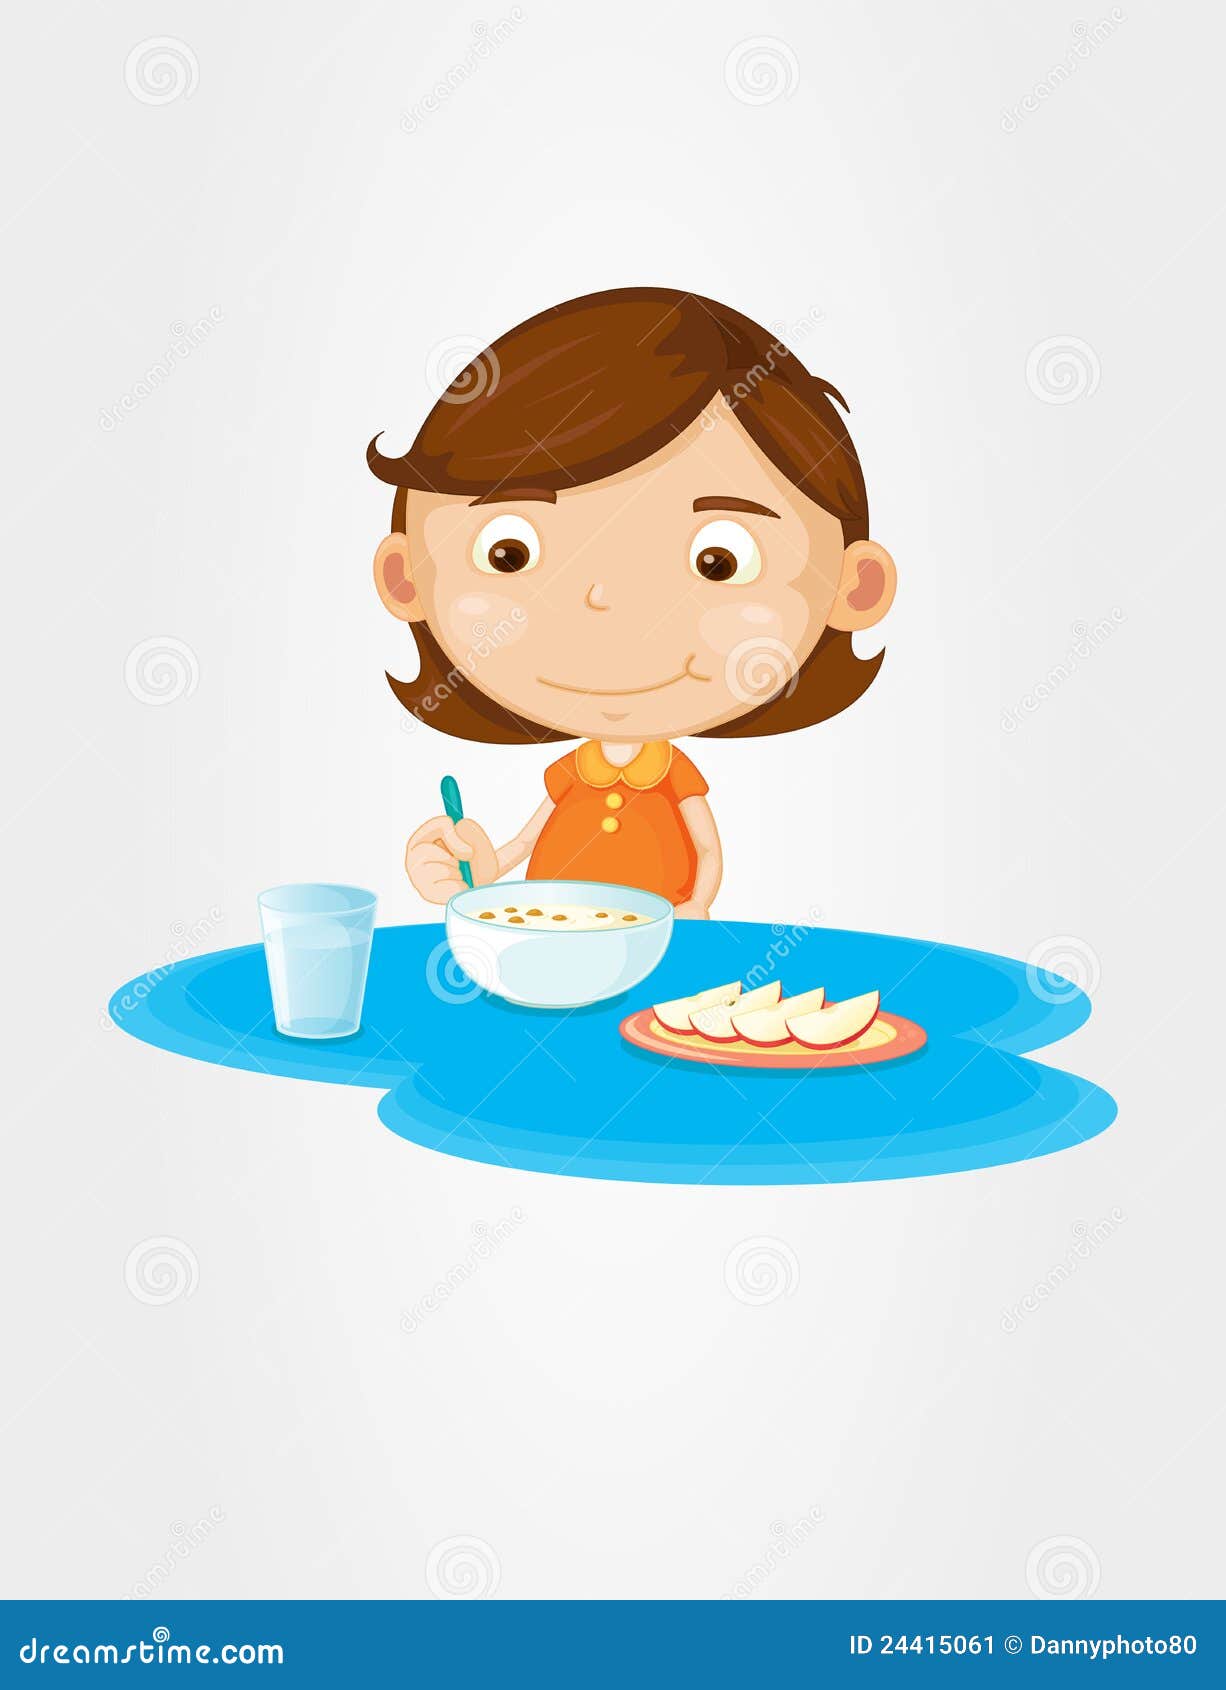 clipart girl eating breakfast - photo #18